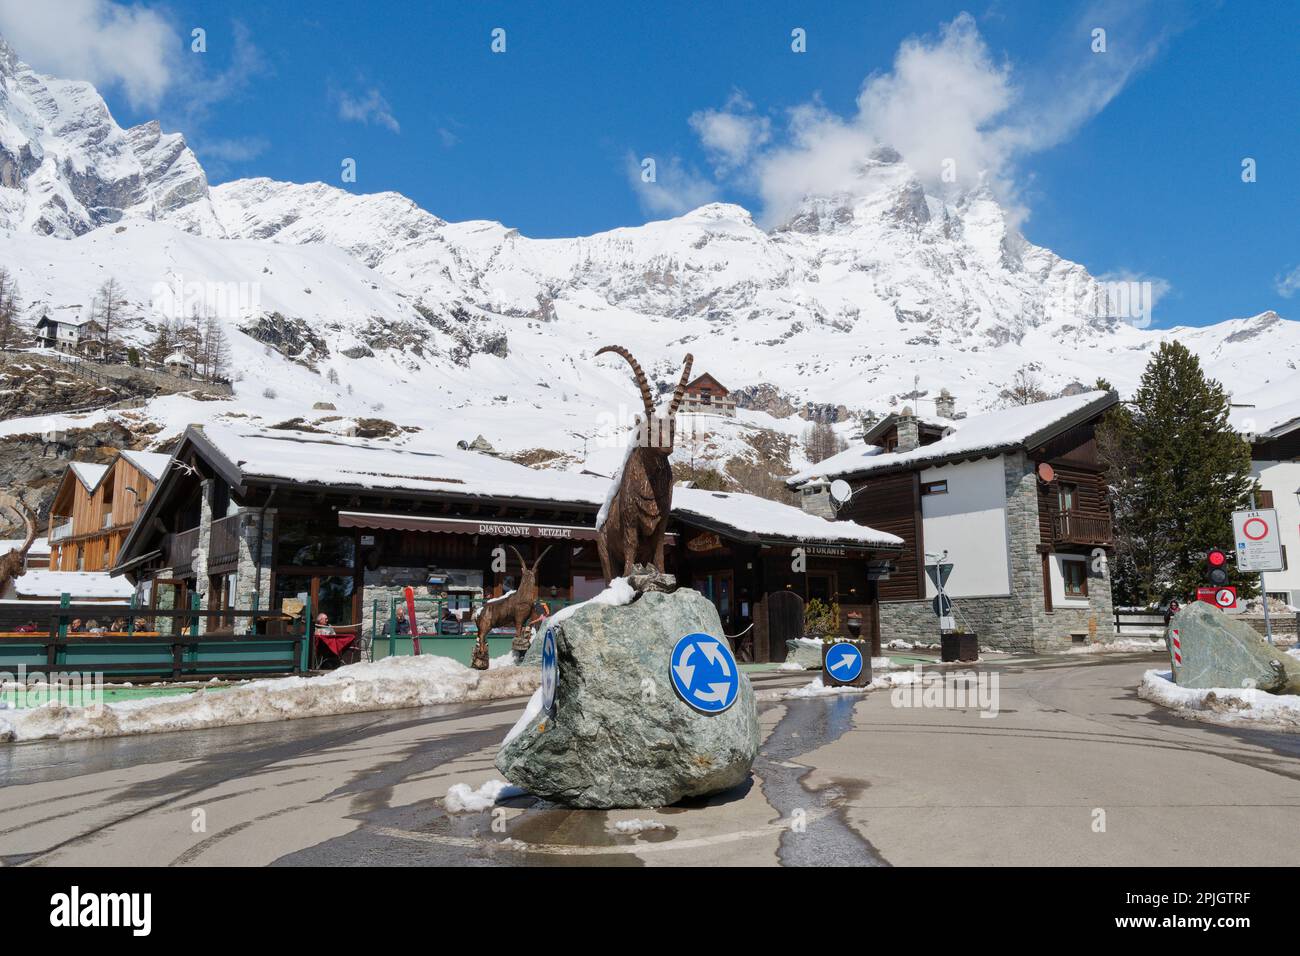 Rotonda con statua di renne con ristorante dietro a Breuil Cervinia, località sciistica in Valle d'Aosta NW Italia. CERVINO aka Mattern montagna dietro. Foto Stock